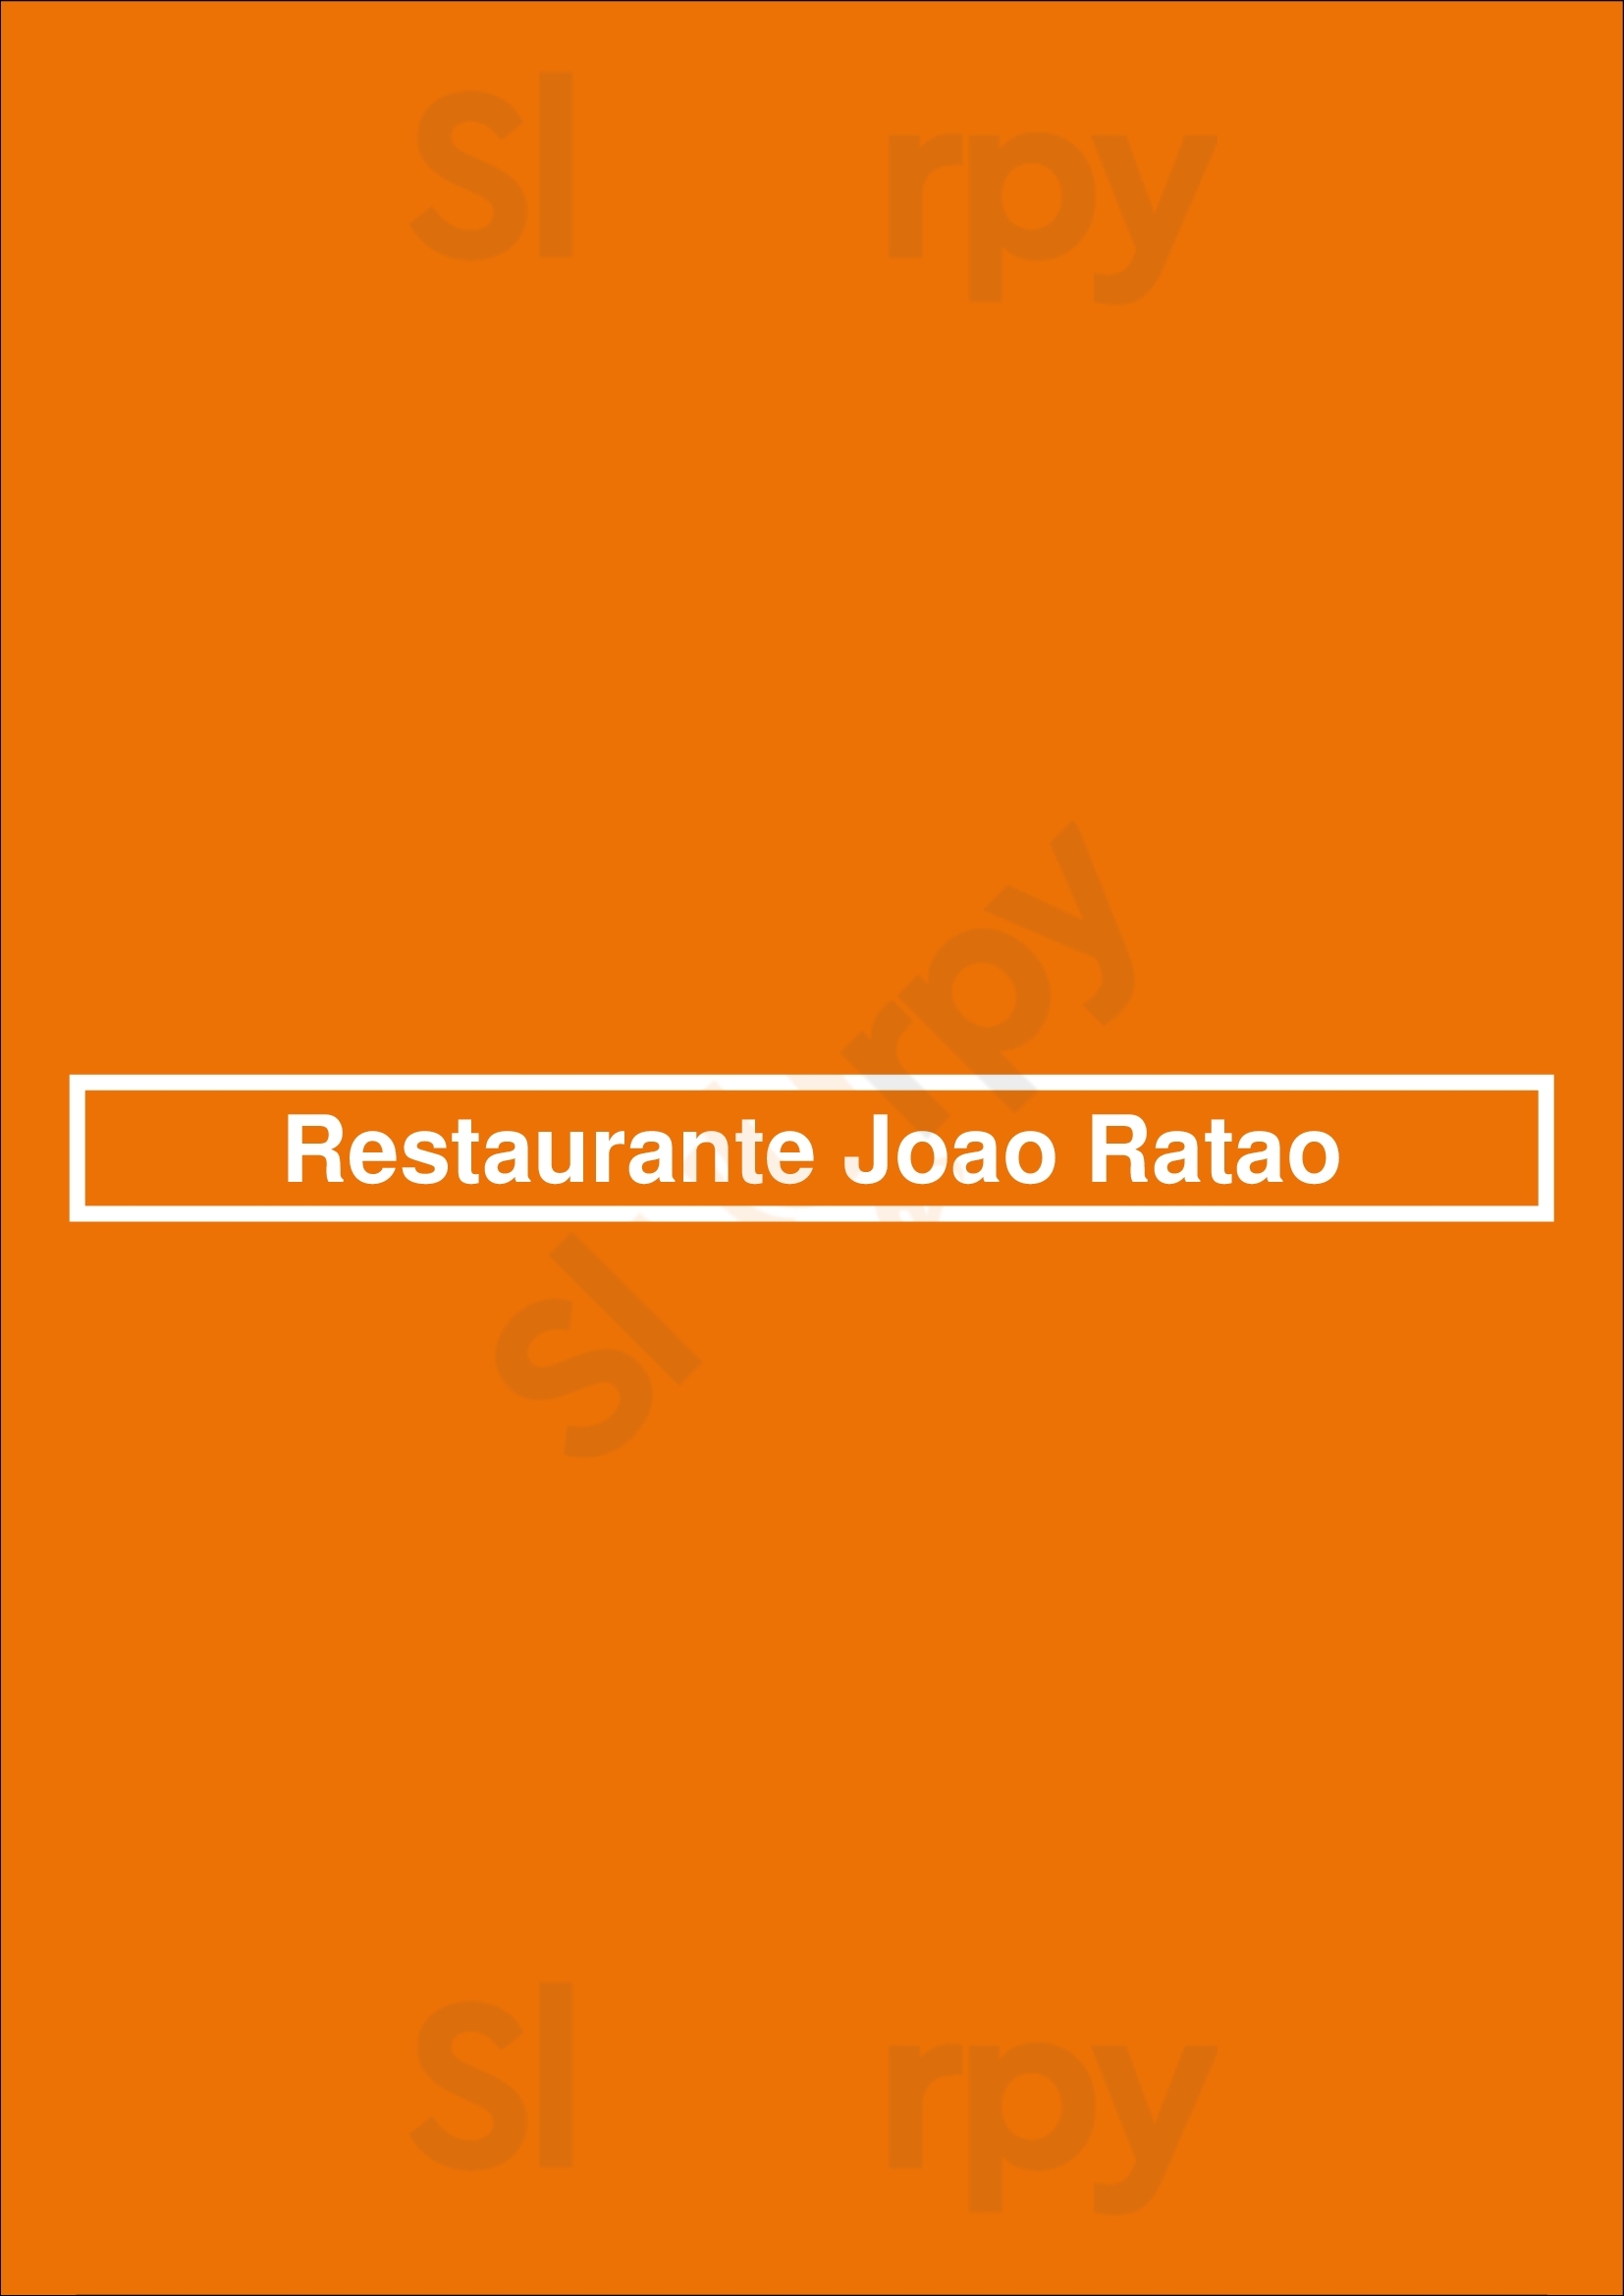 Restaurante Joao Ratao Matosinhos Menu - 1